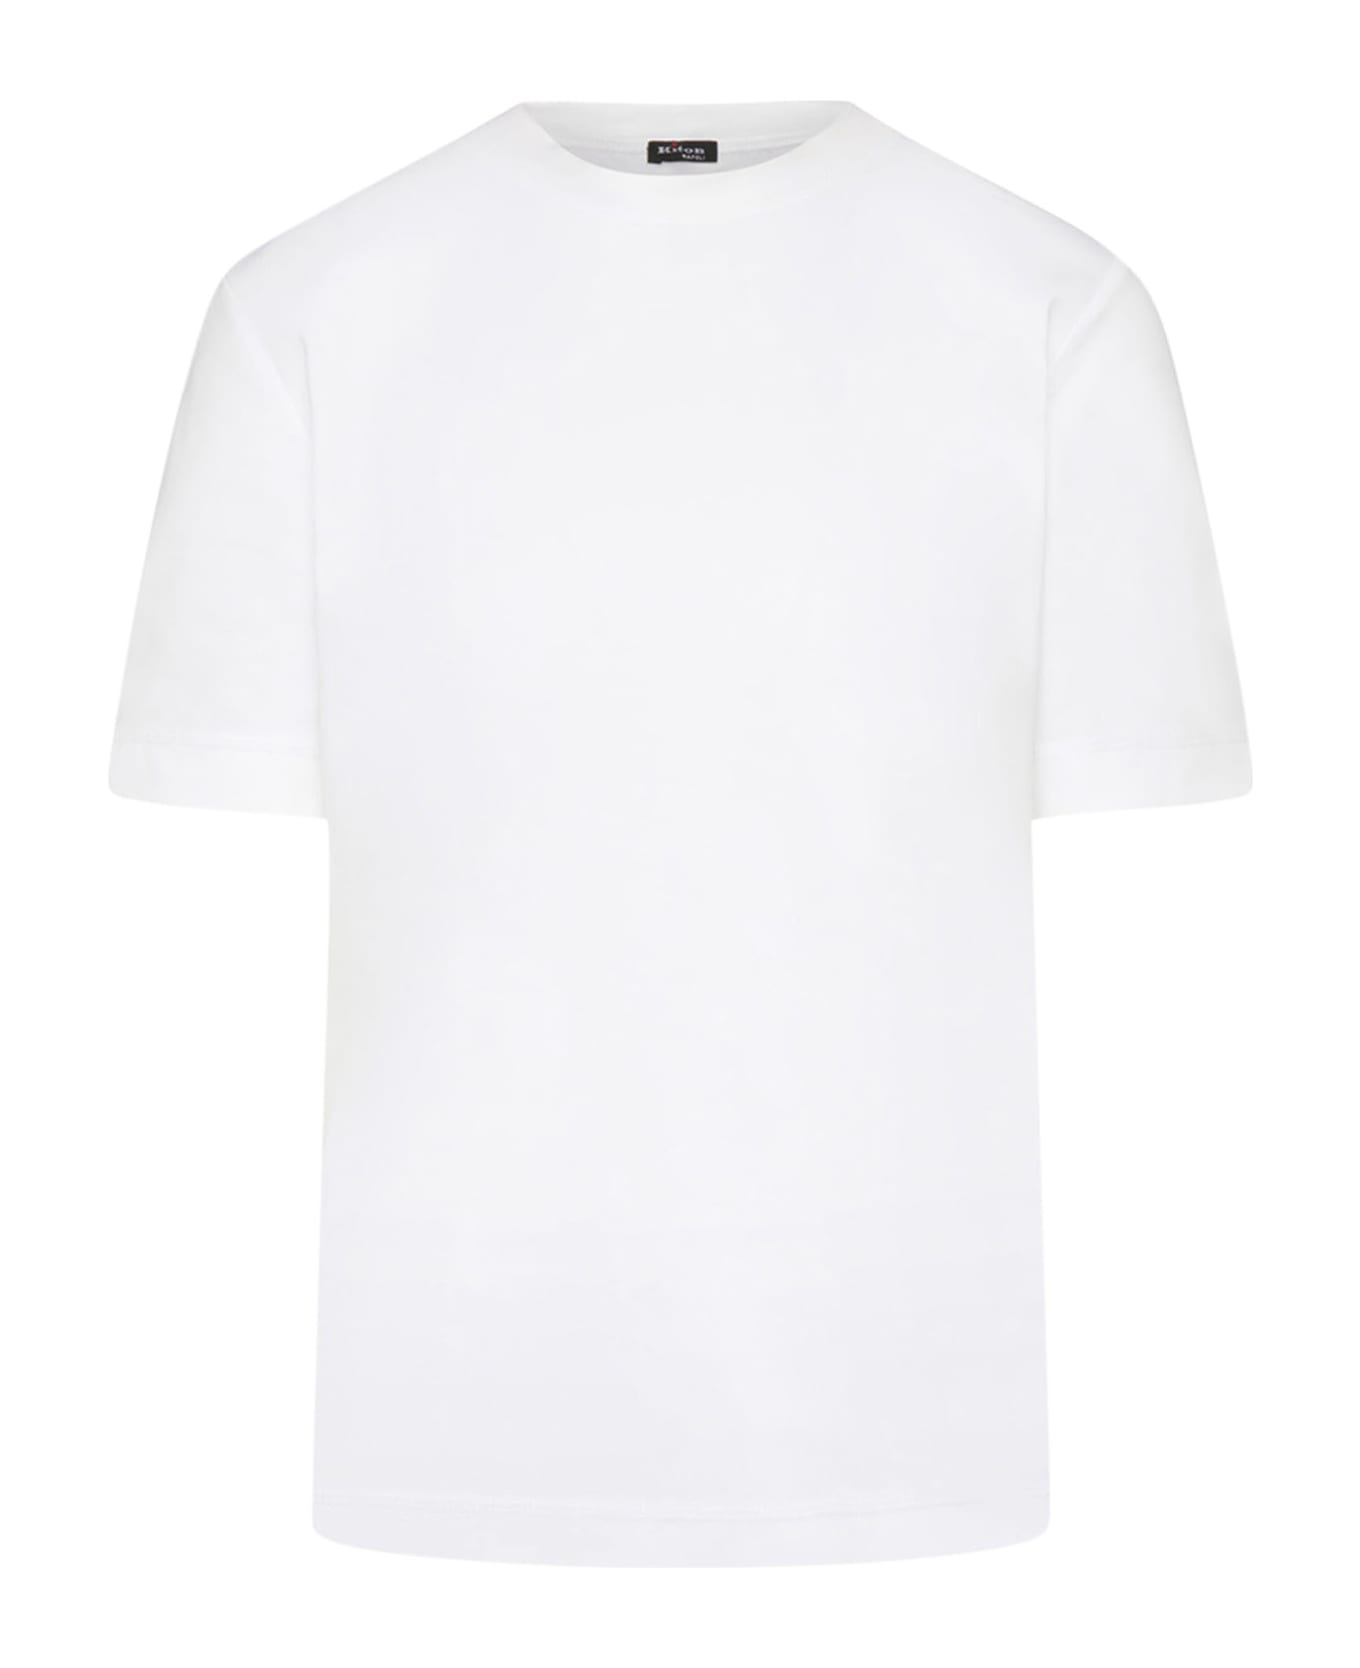 Kiton Shirt Cotton - WHITE Tシャツ